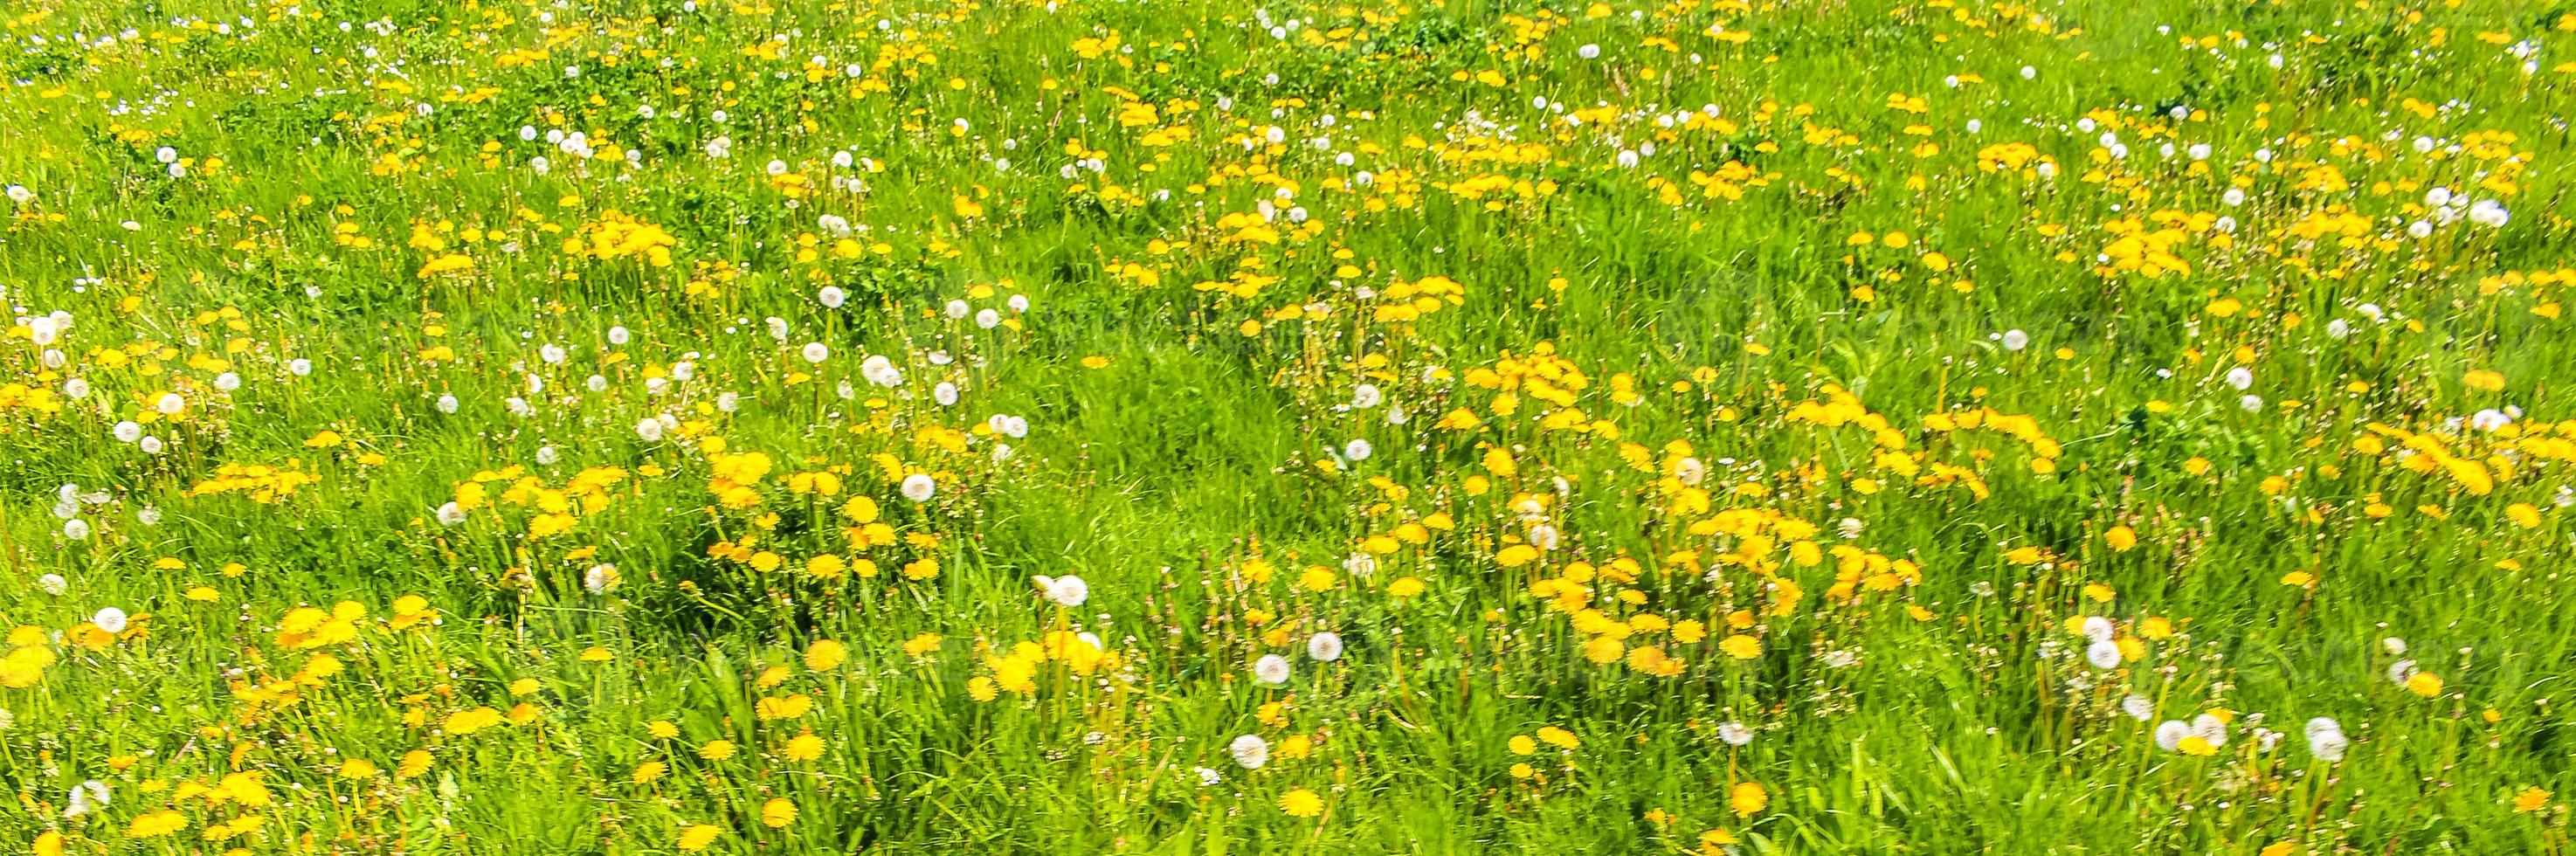 Beautiful yellow dandelion flower blowflower flowers on green meadow Germany. photo